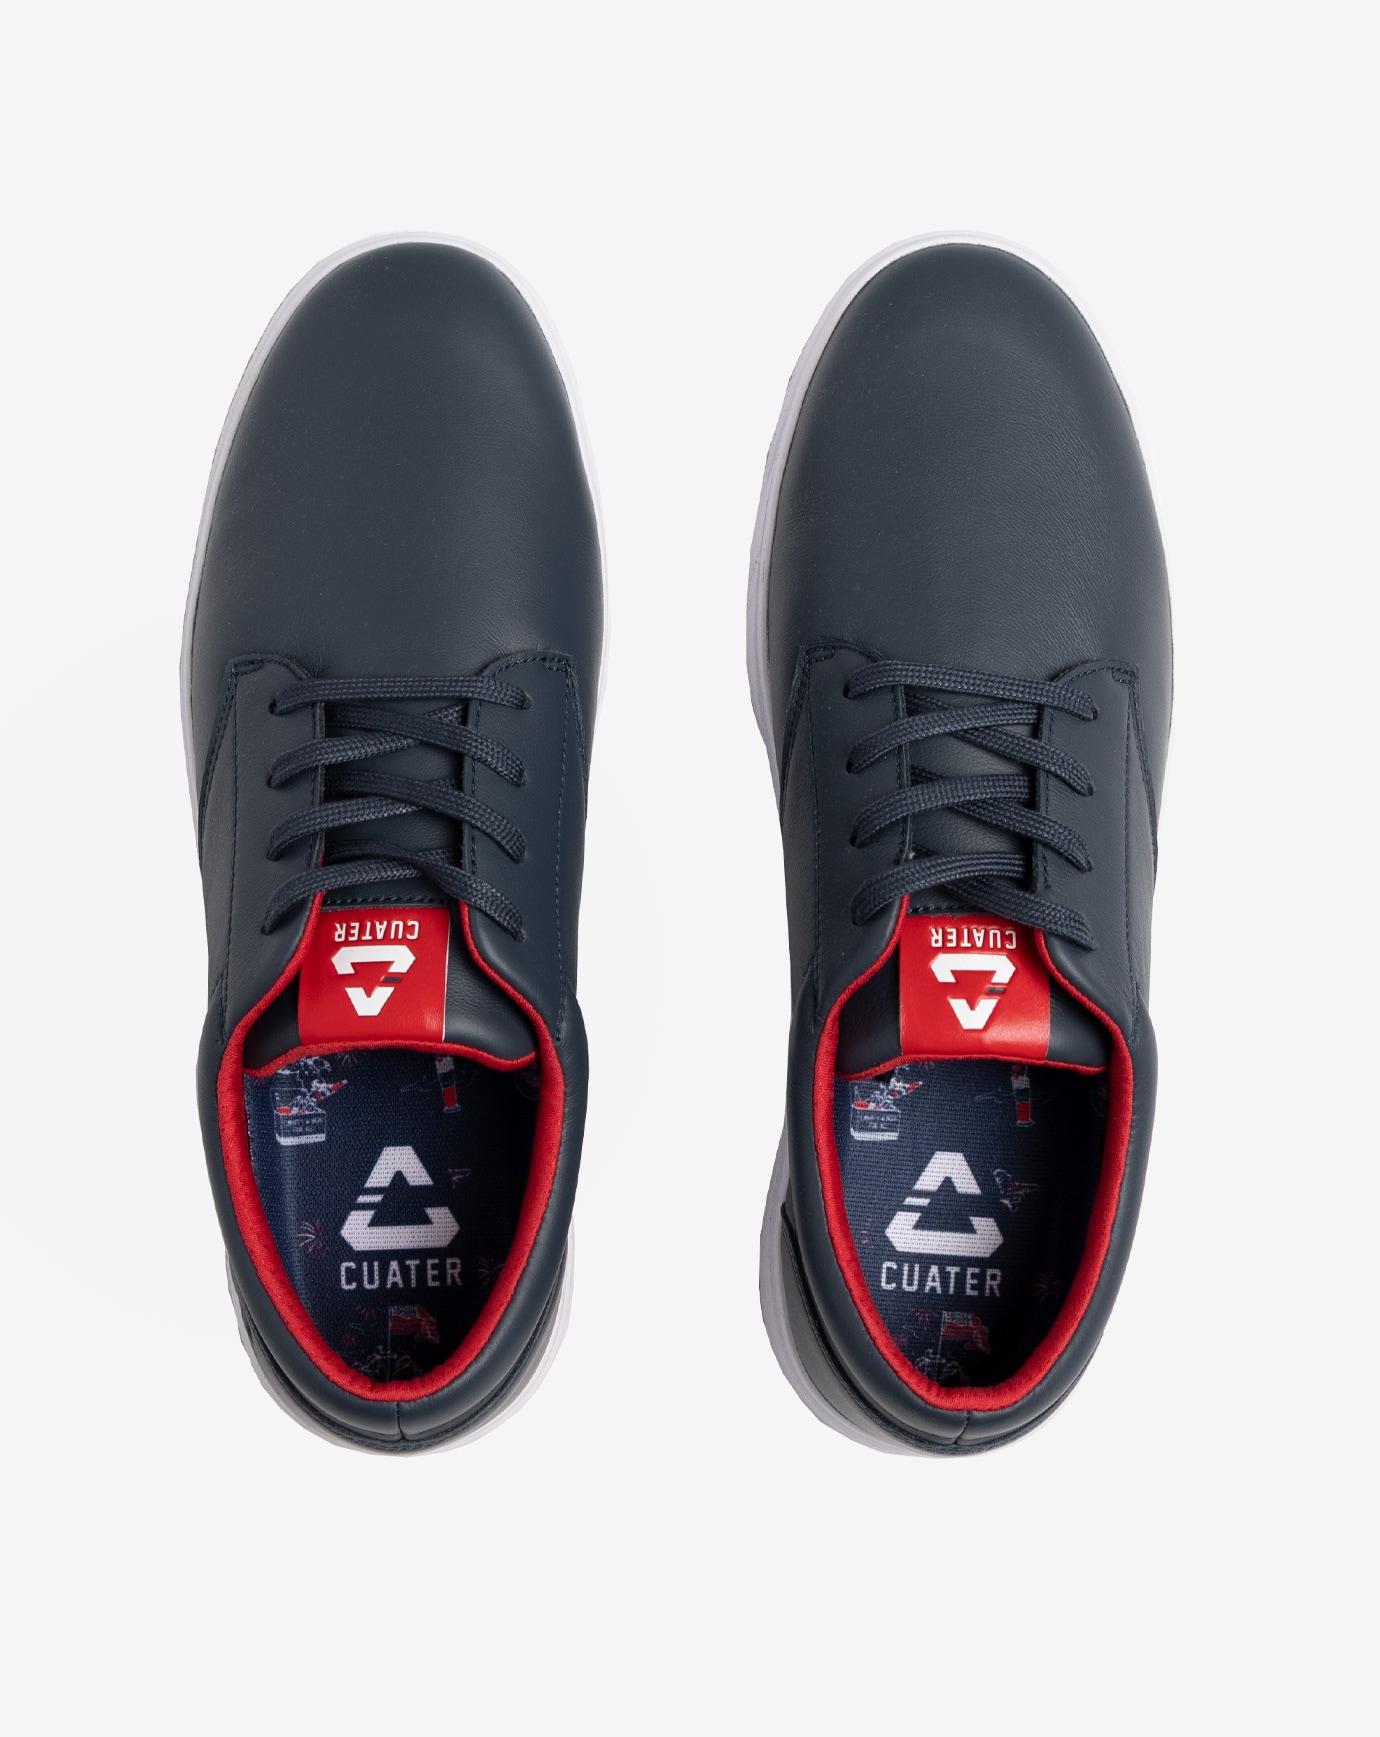 Jameson Custom Name Air Jordan 4 Sneaker Shoes For Men And Women